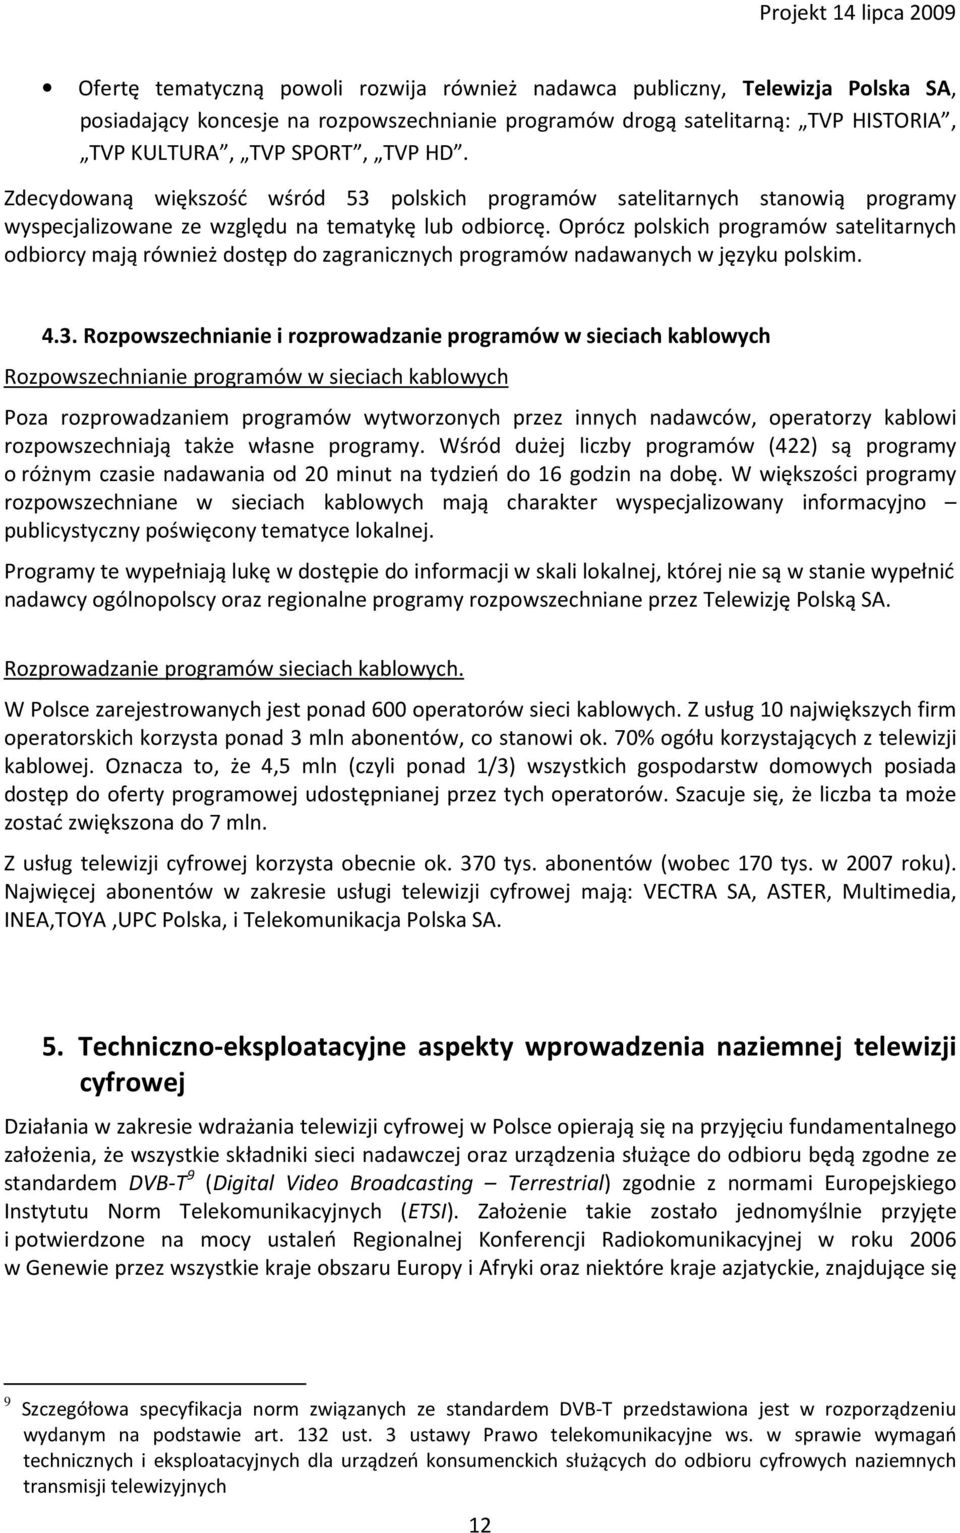 Oprócz polskich programów satelitarnych odbiorcy mają również dostęp do zagranicznych programów nadawanych w języku polskim. 4.3.